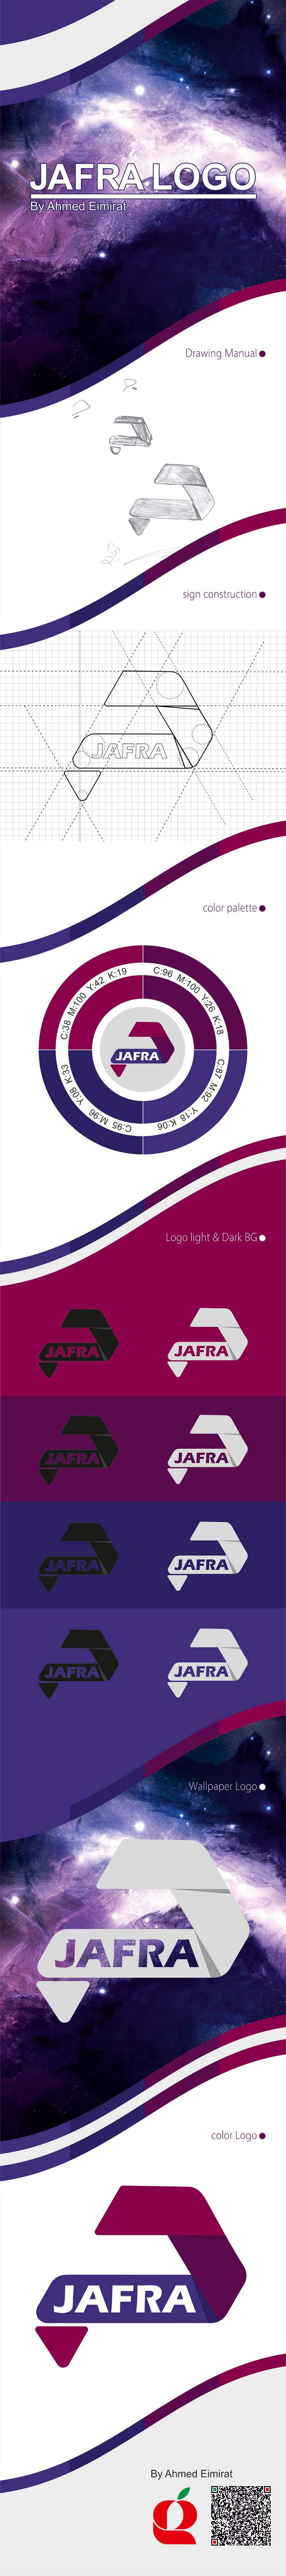 Jafra logo brand palestine